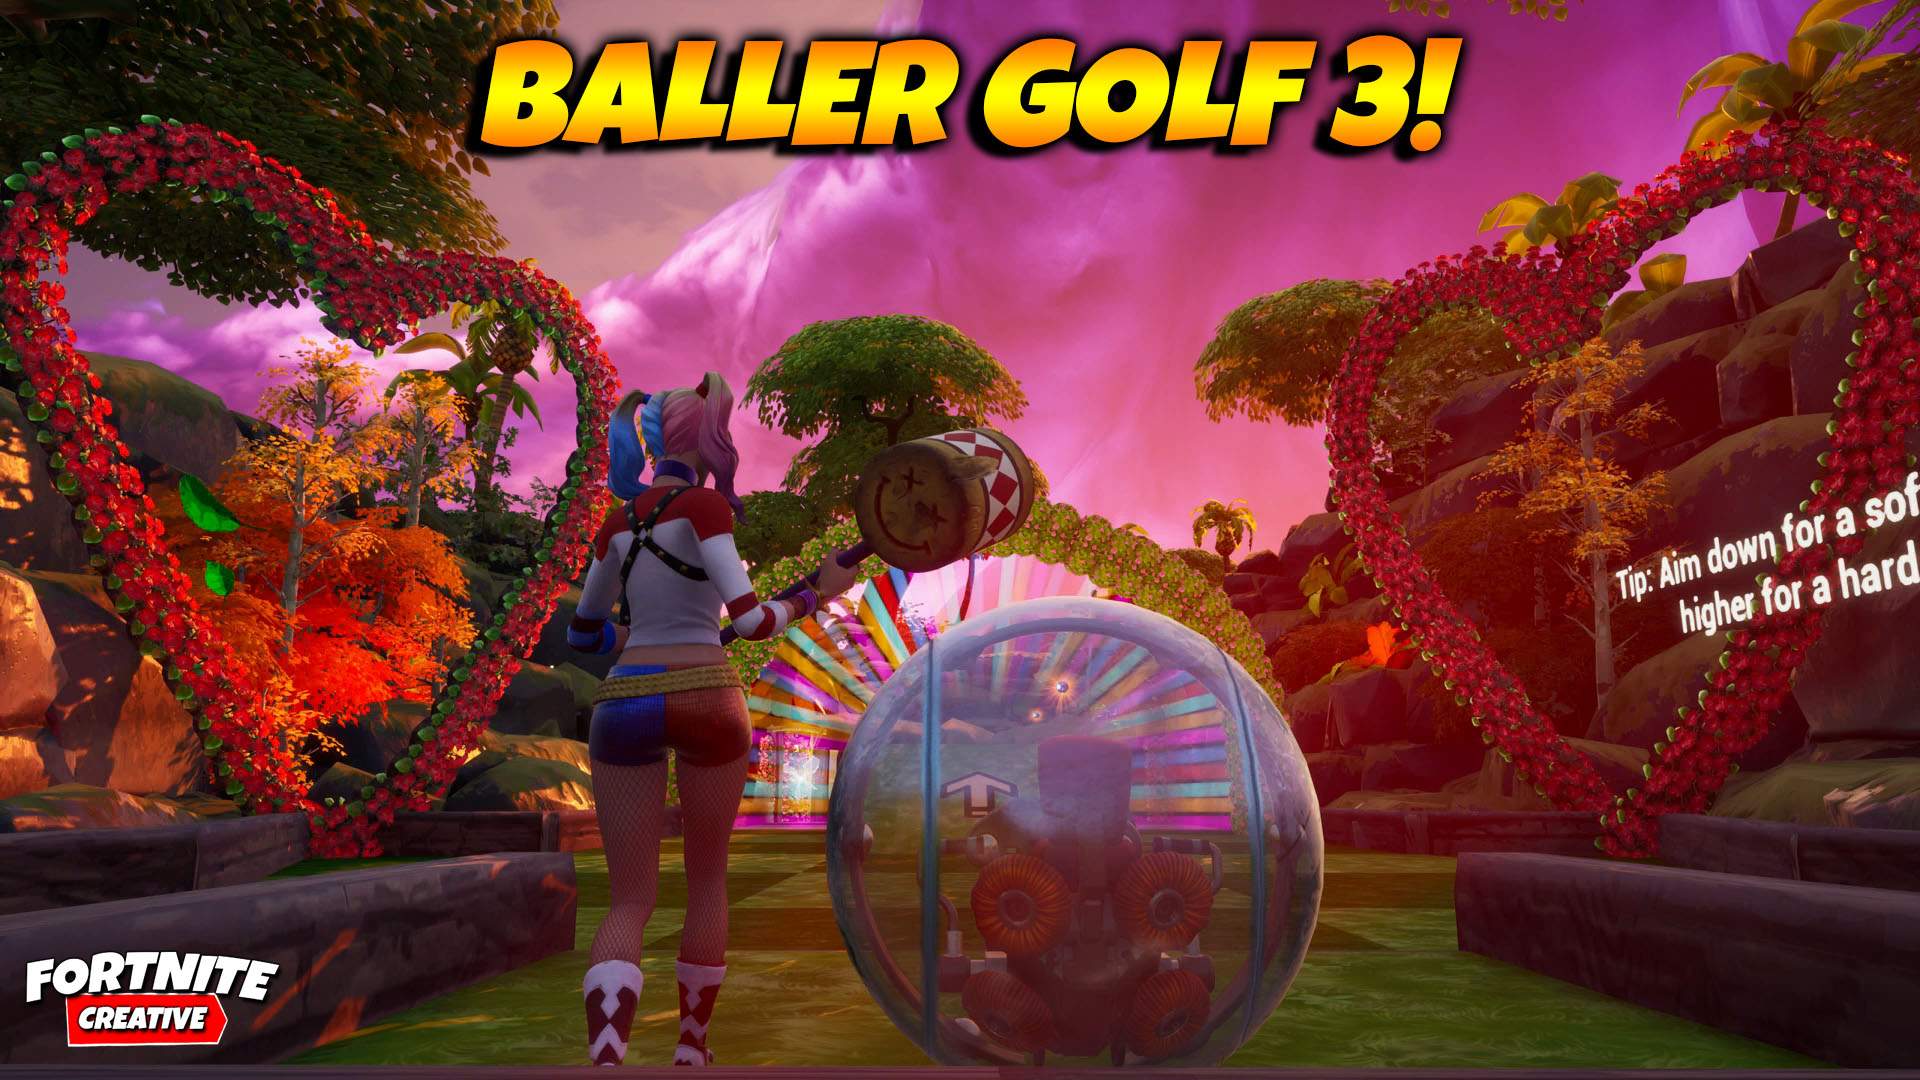 BALLER GOLF 3!